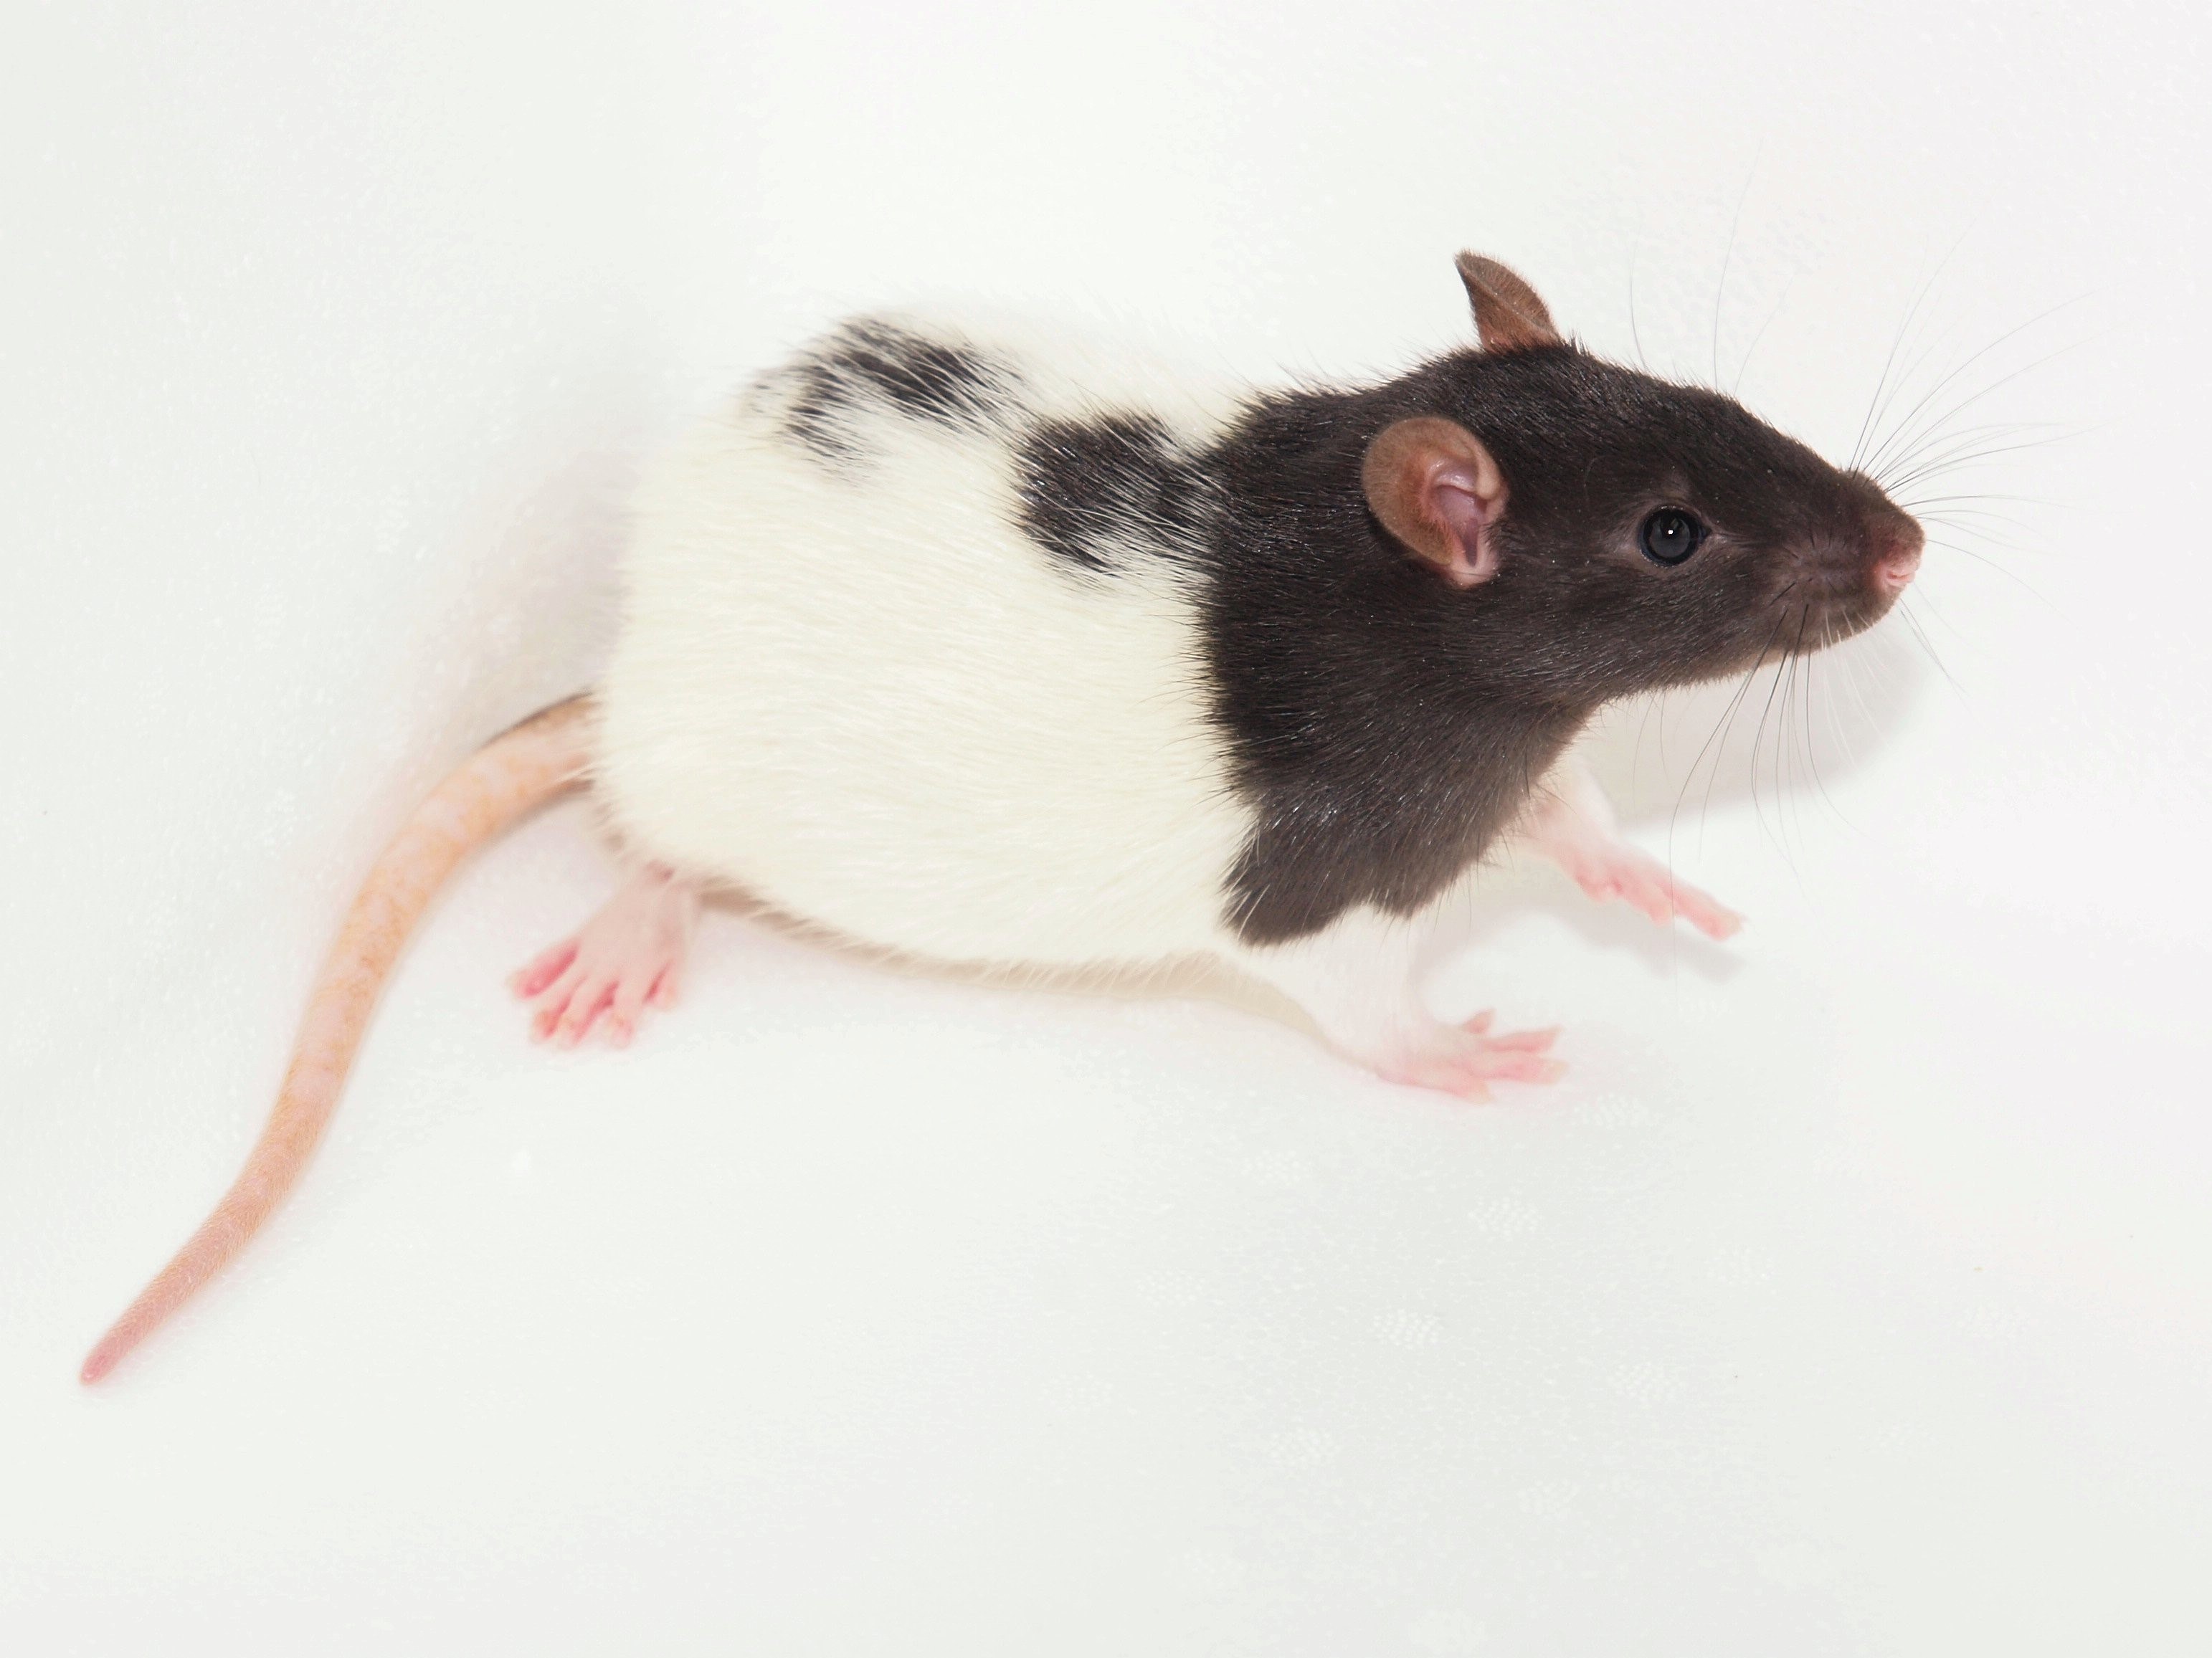 породы домашних крыс с фотографиями и названиями